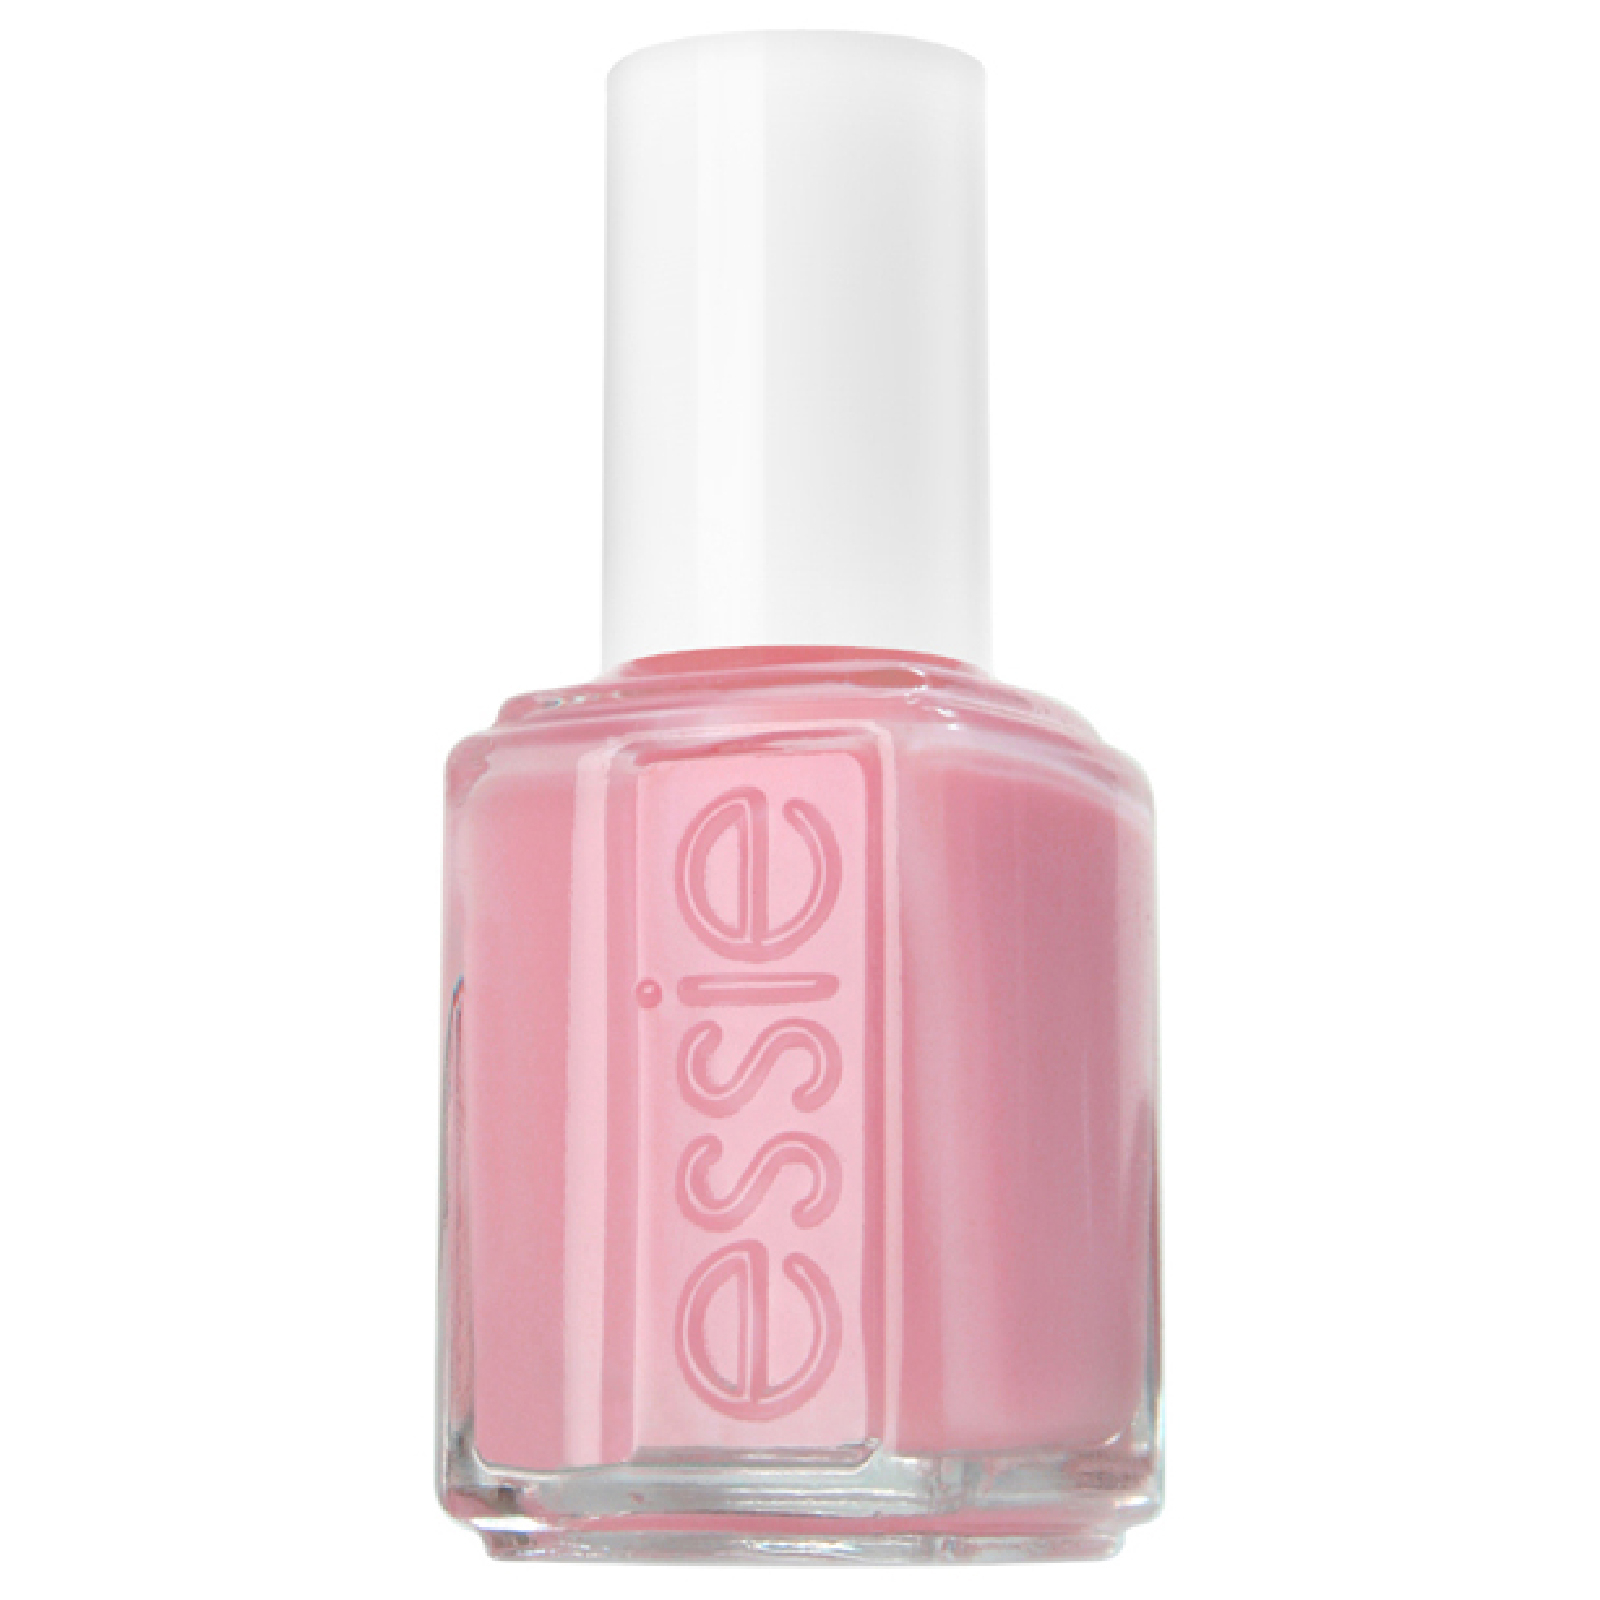 essie Professional Petal Pink Nail Varnish (13.5Ml)